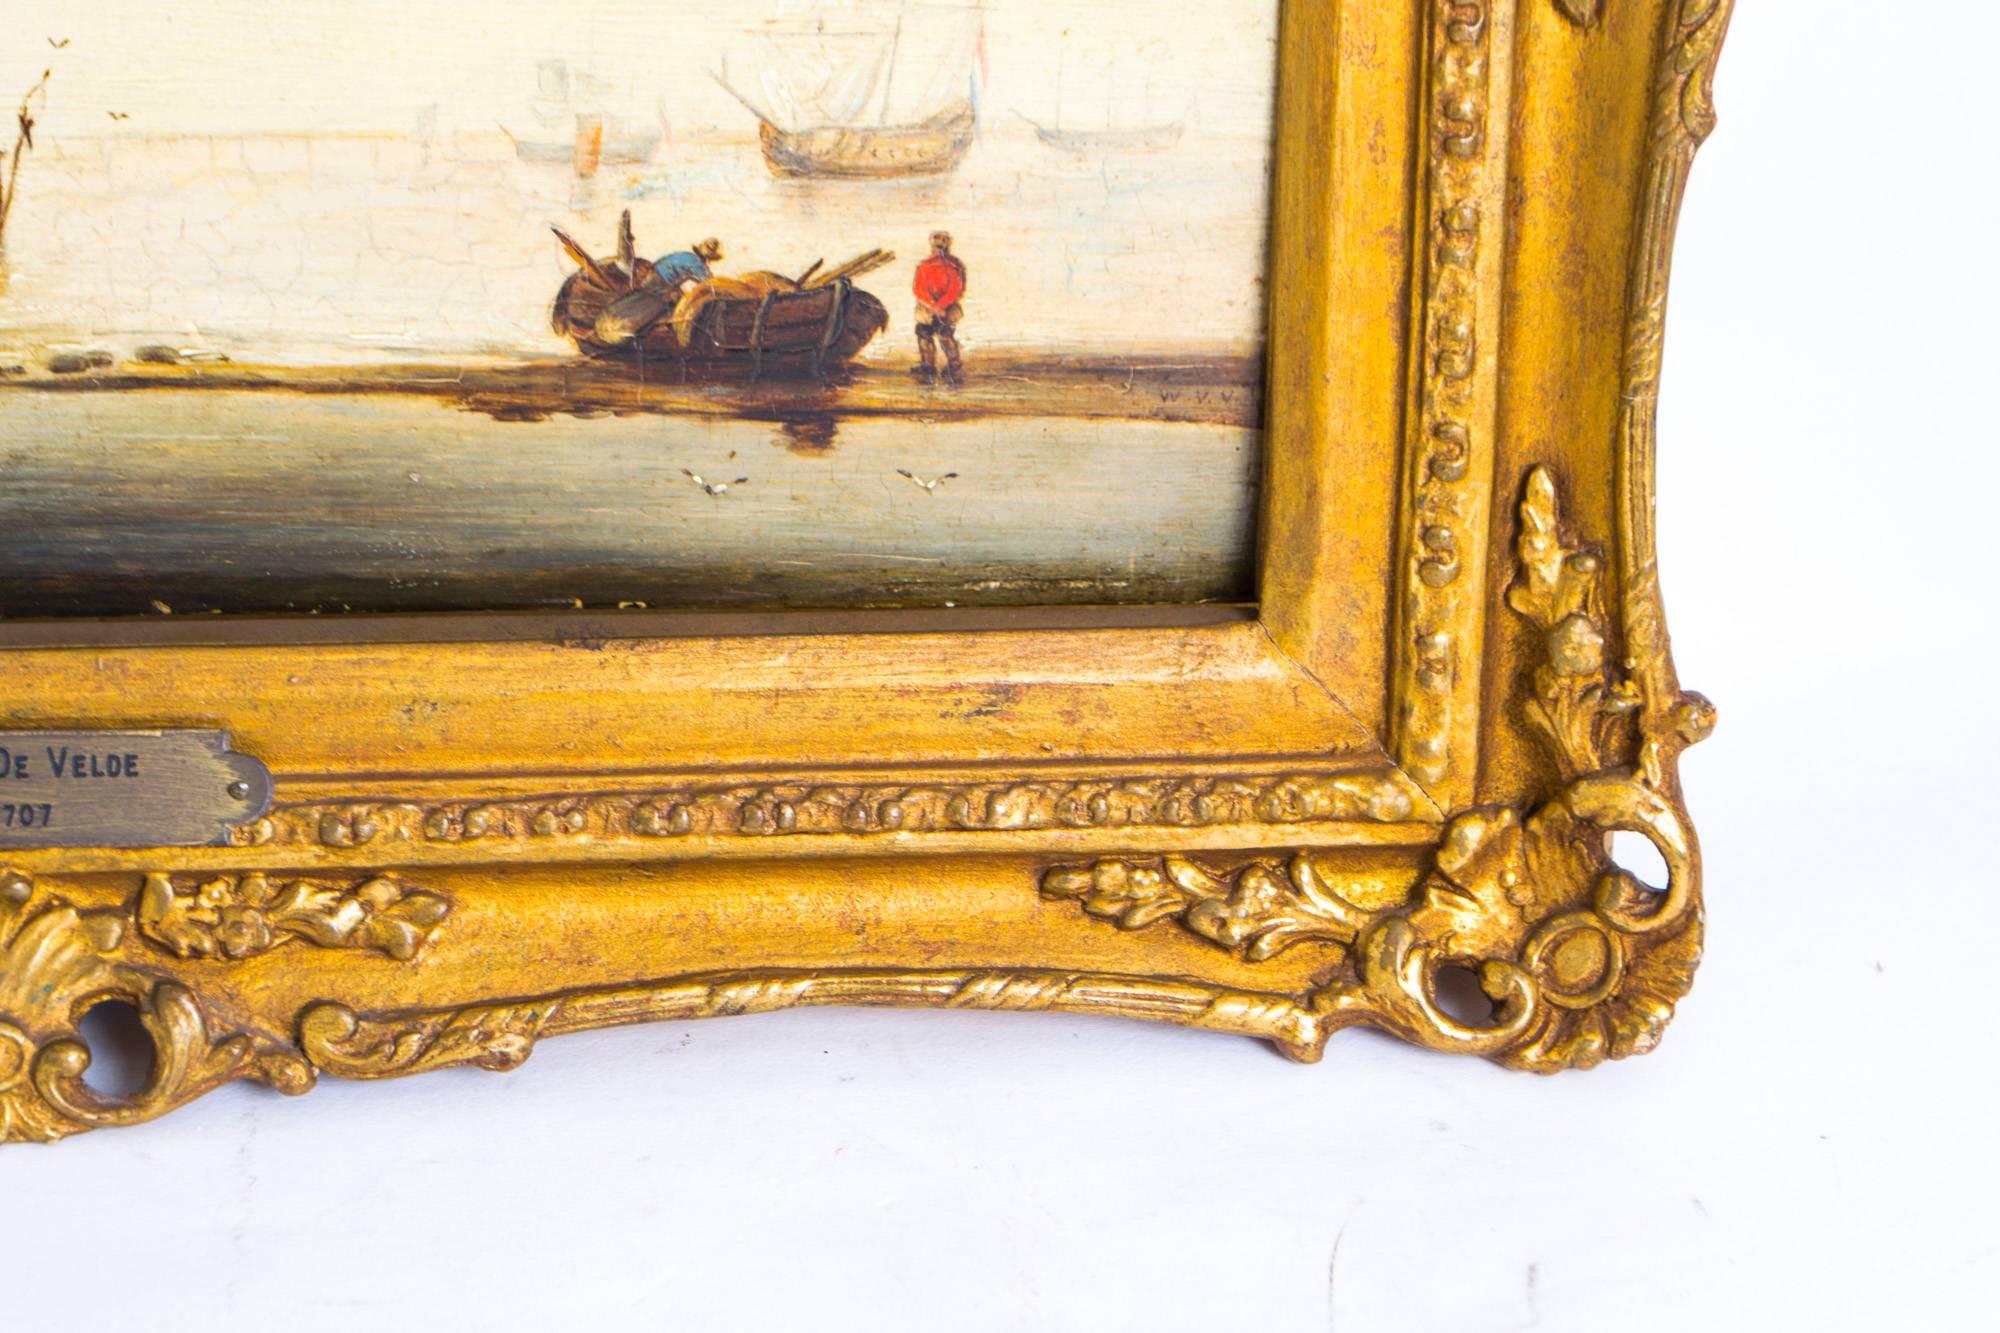 Antique Oil Painting Dutch Shipping Scene van der Velde Jr 3